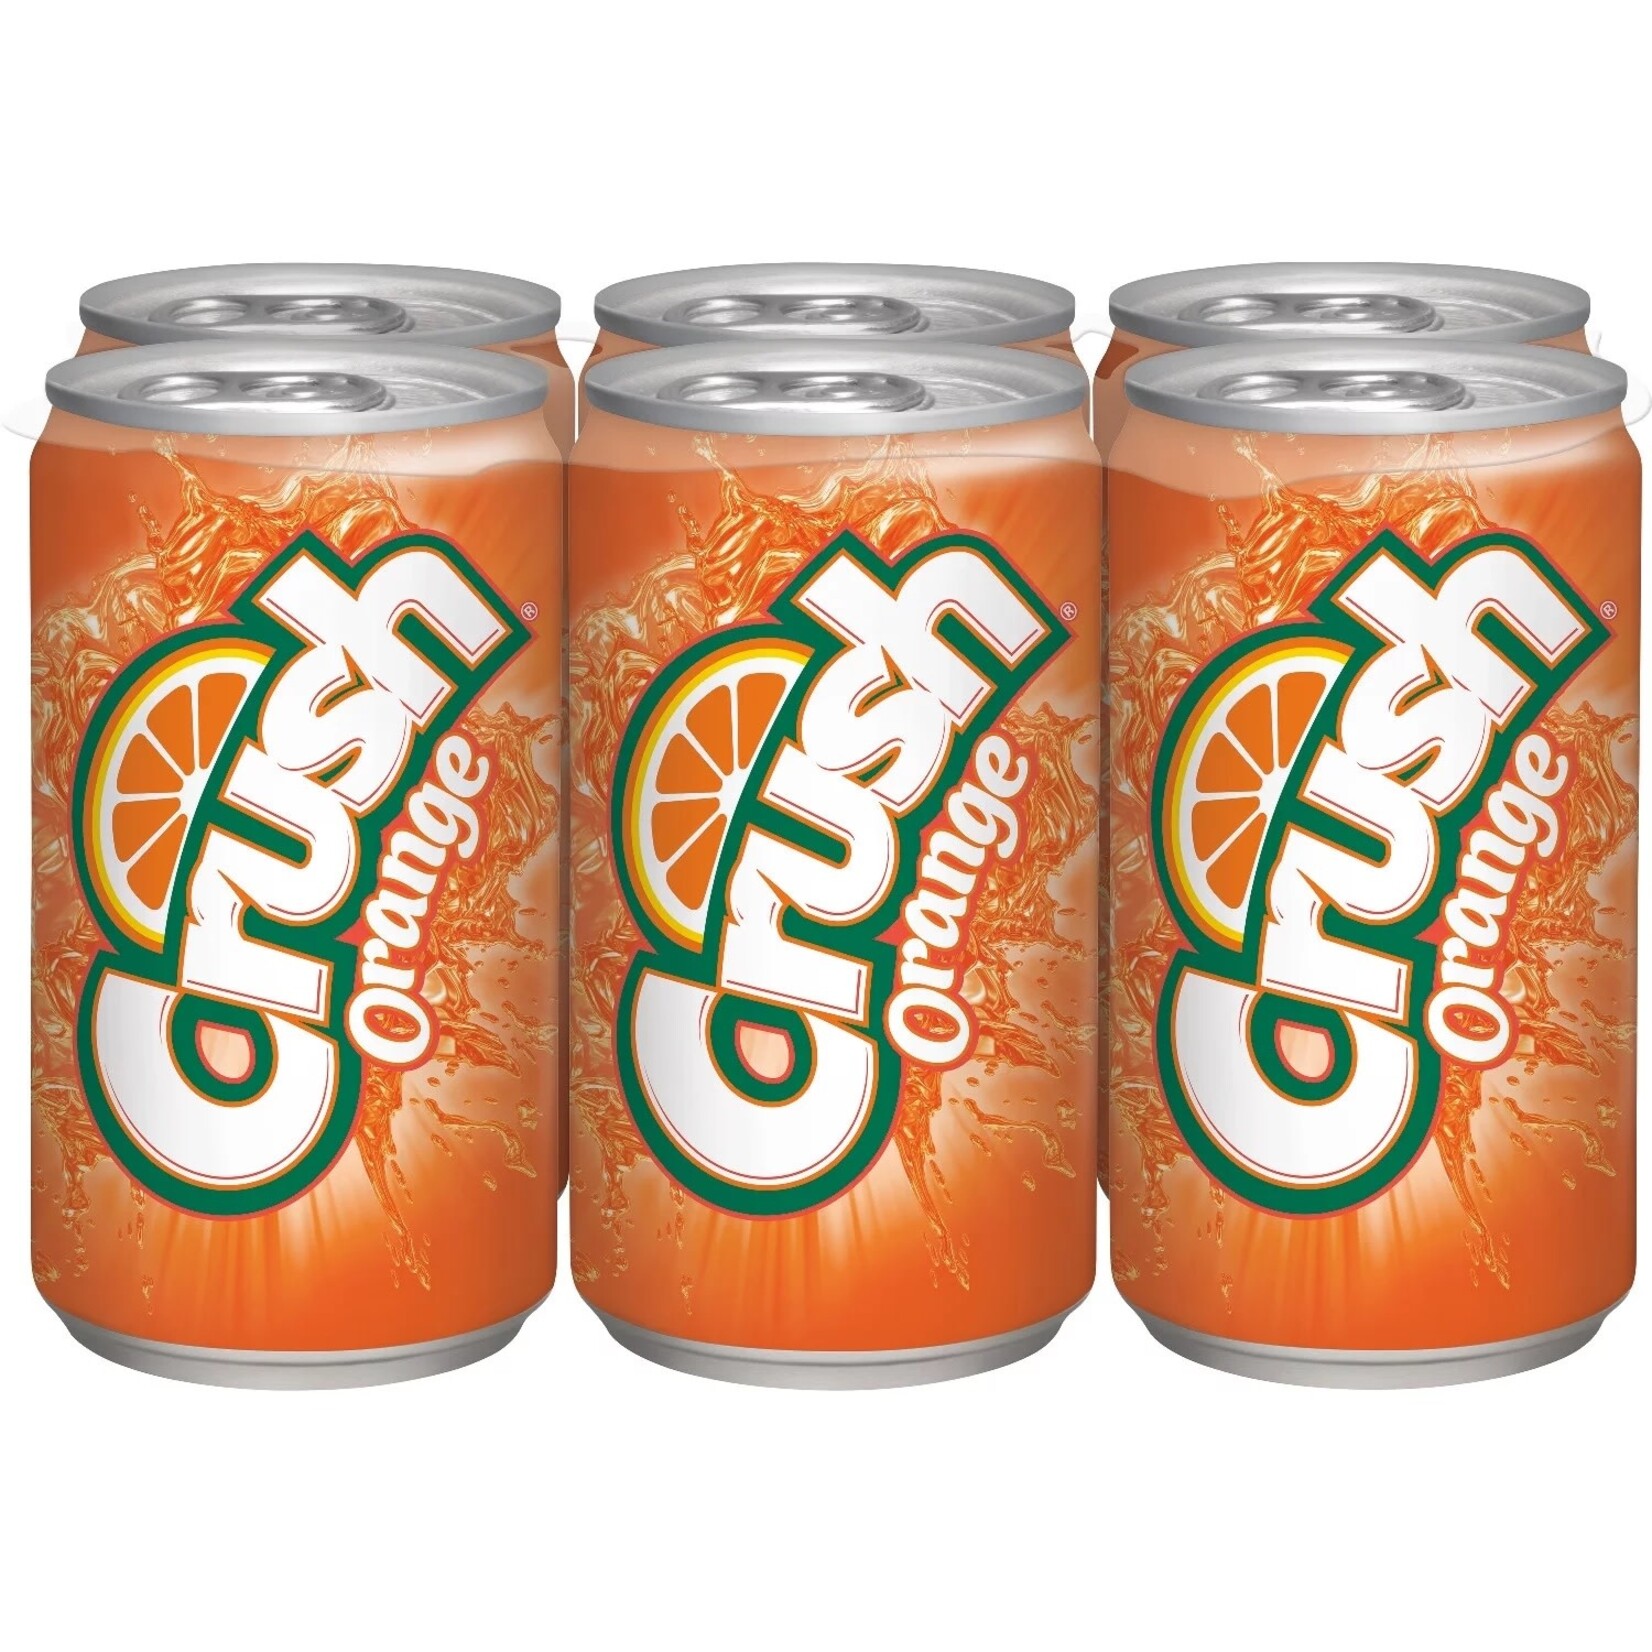 Pepsi Crush Orange 6pk x 7.5oz cans